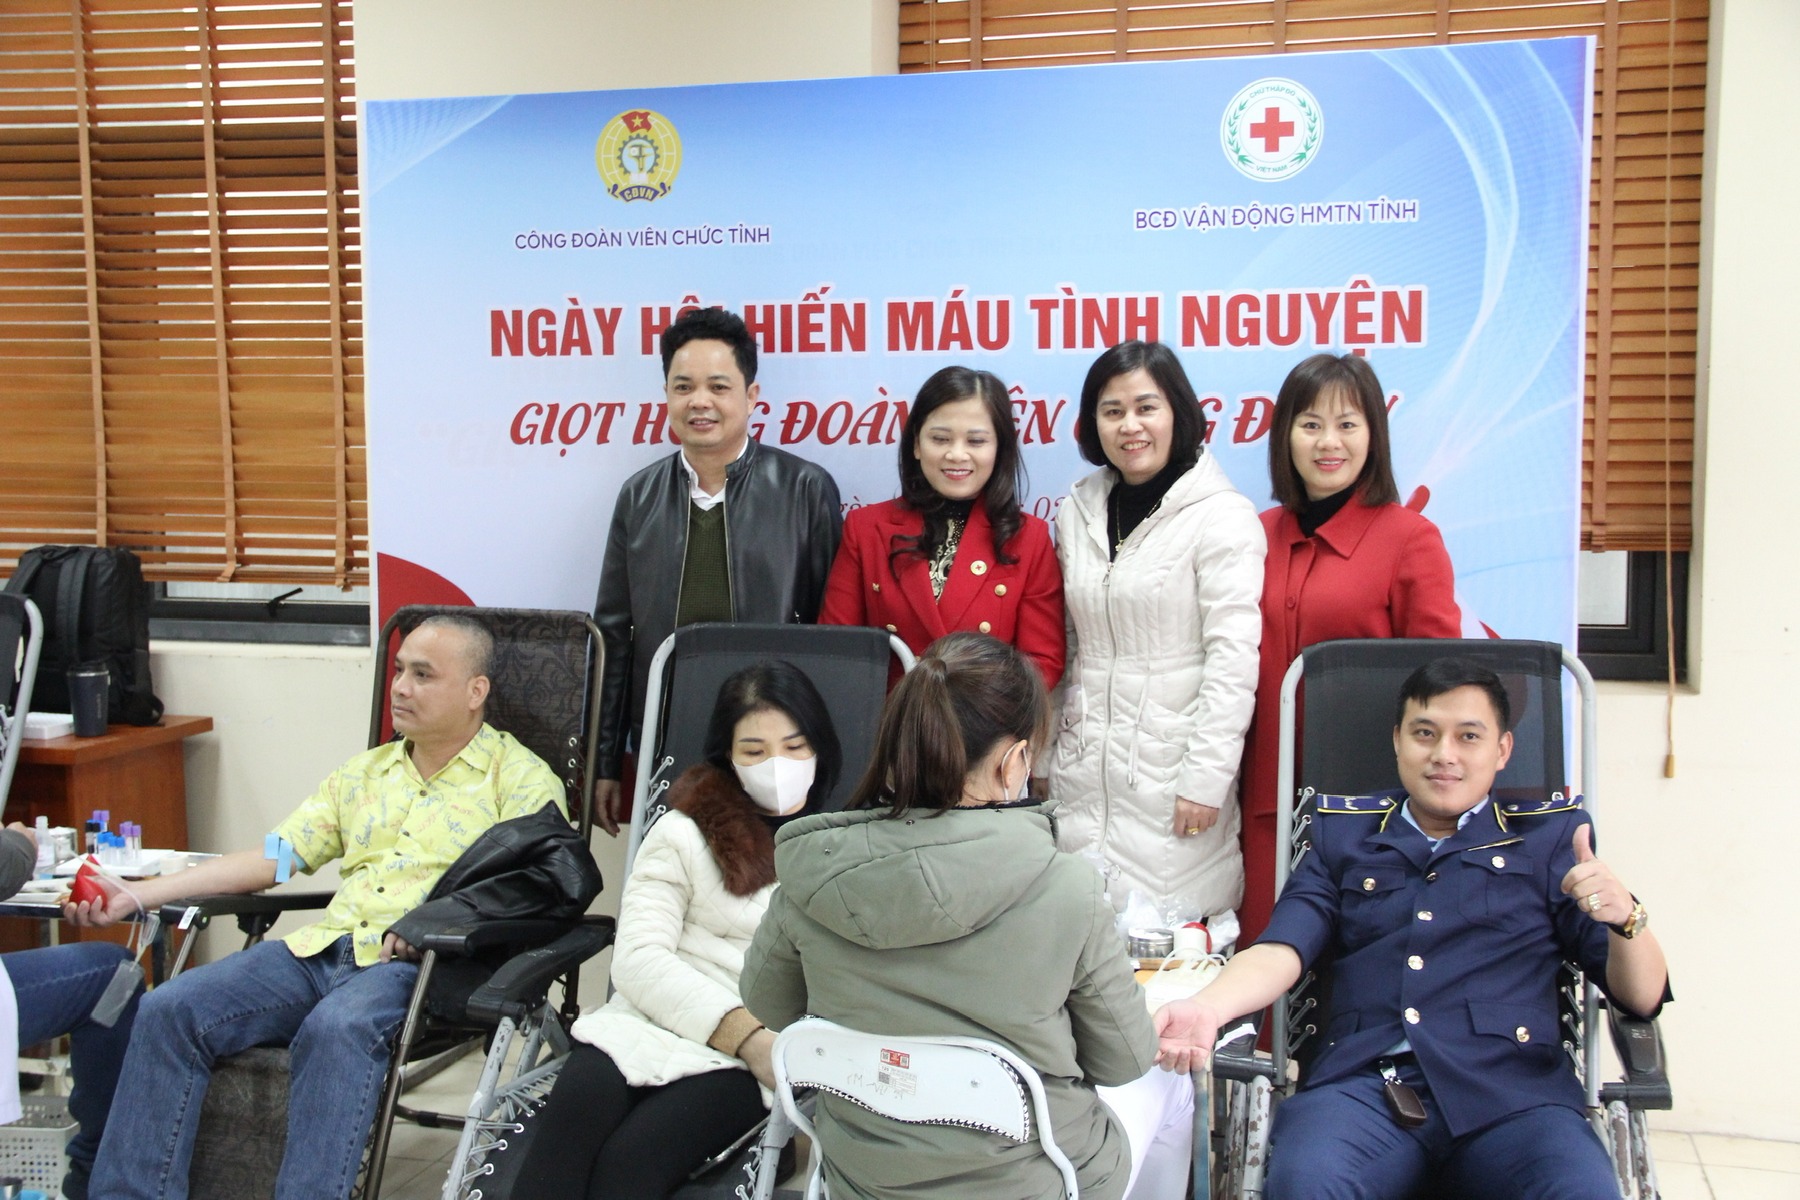 Công đoàn Viên chức tỉnh Bắc Giang tổ chức Ngày hội hiến máu “Giọt hồng Đoàn viên công đoàn”